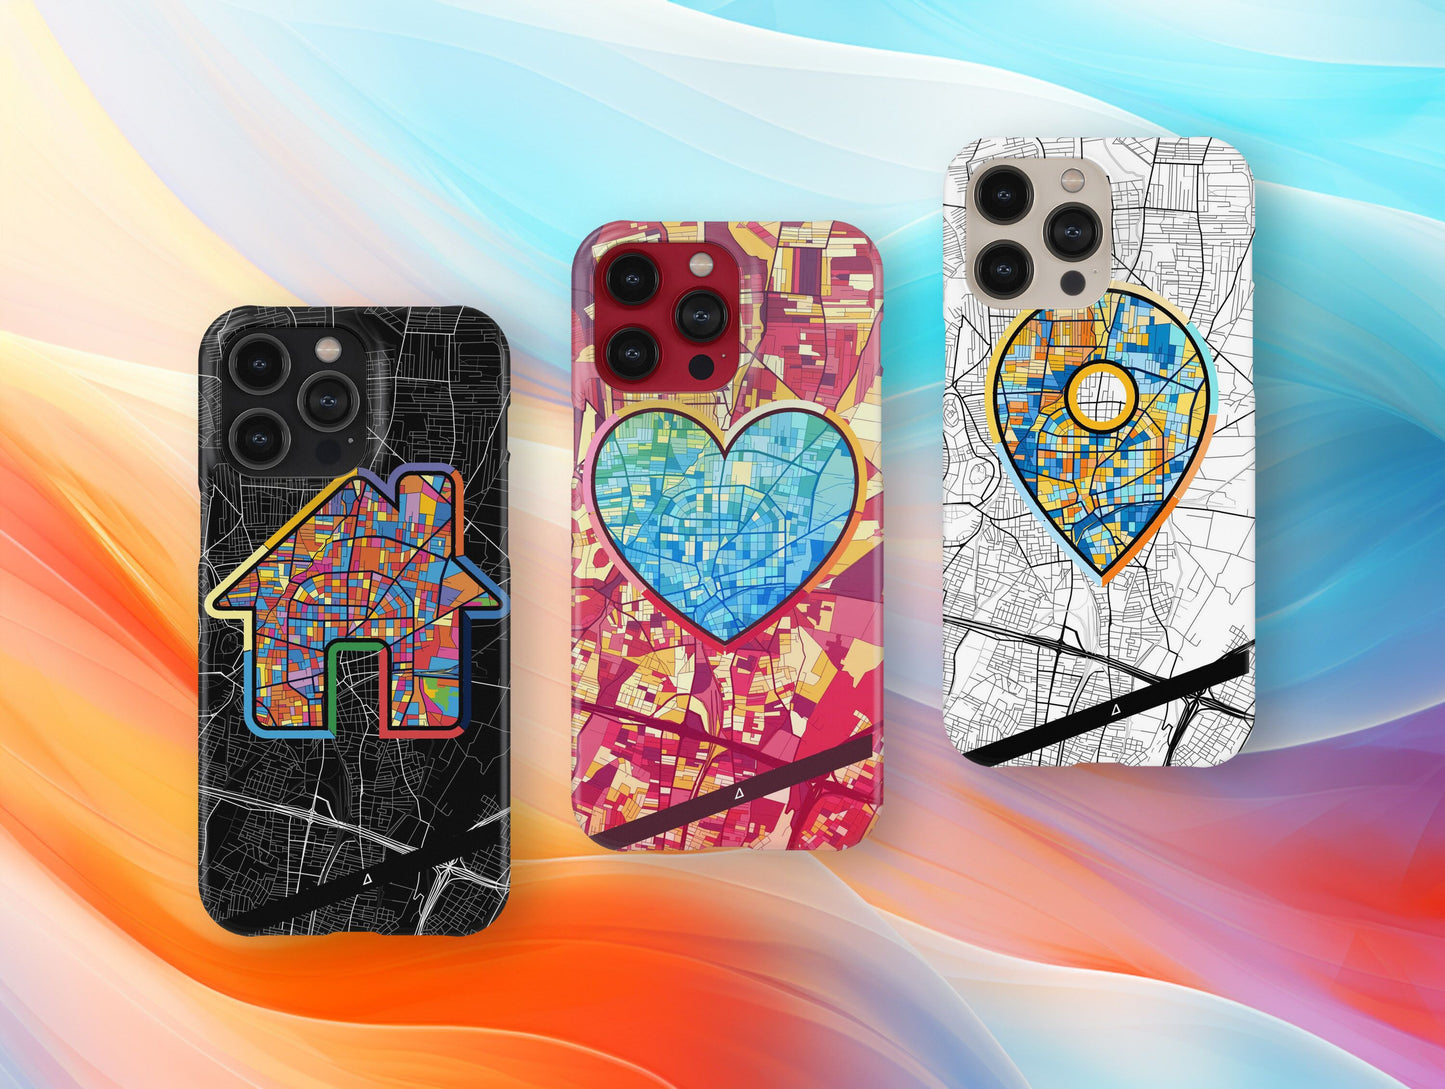 Αχαρνες Ελλαδα slim phone case with colorful icon. Birthday, wedding or housewarming gift. Couple match cases.